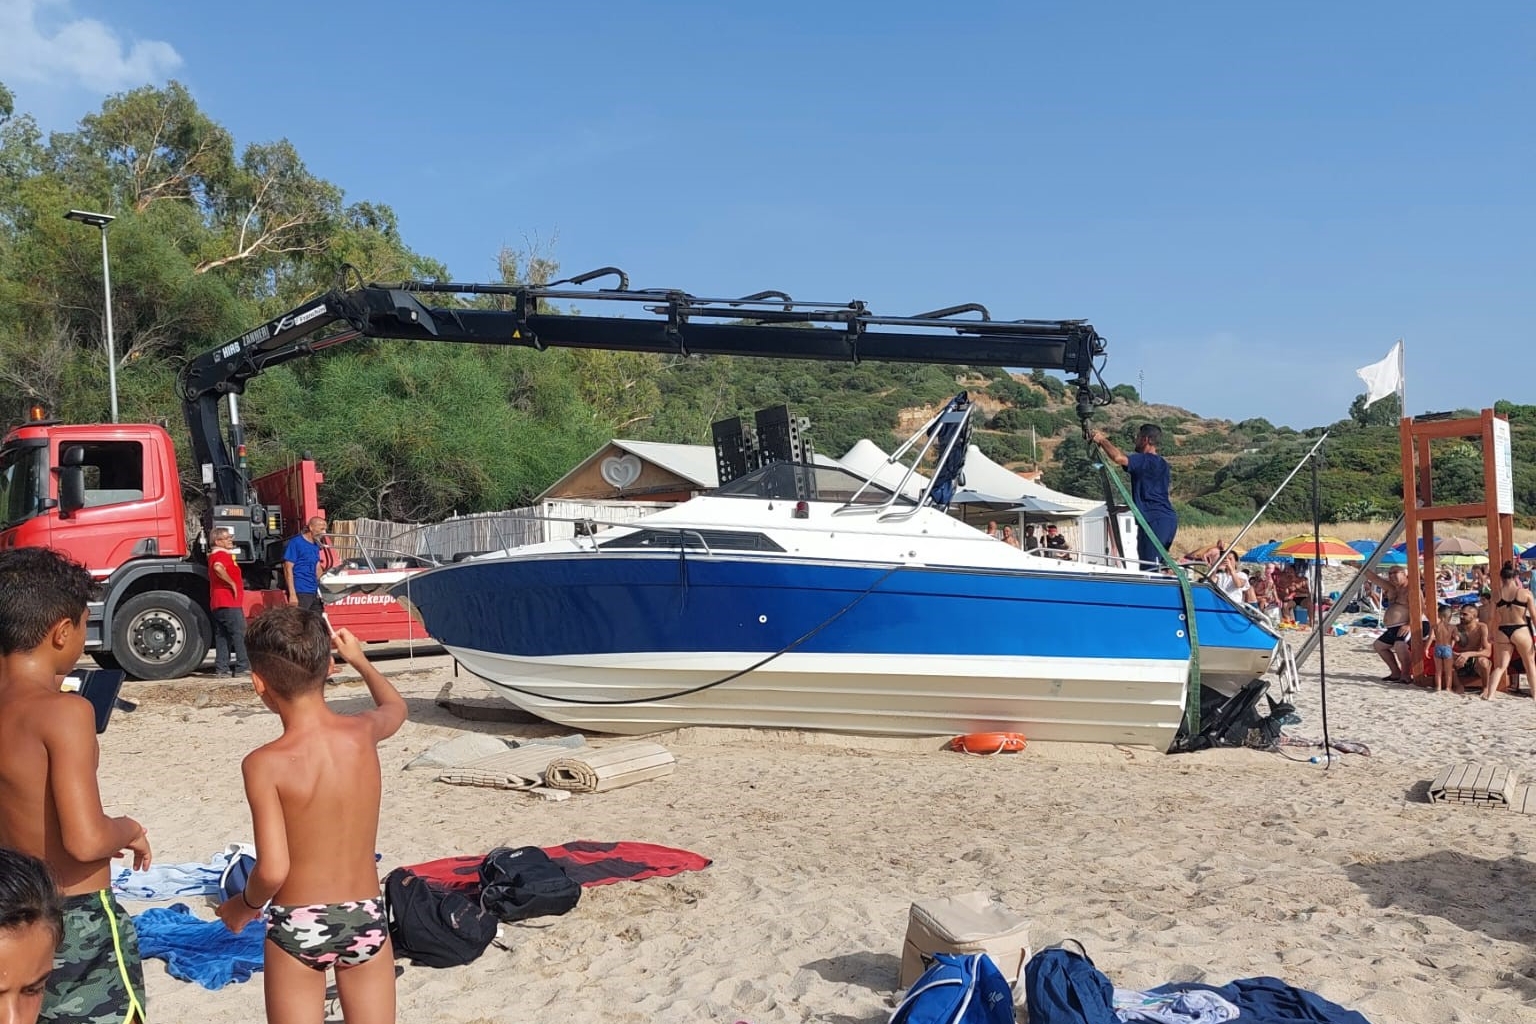 Recuperata l’imbarcazione spiaggiata a Ferragosto a Baccu Mandara